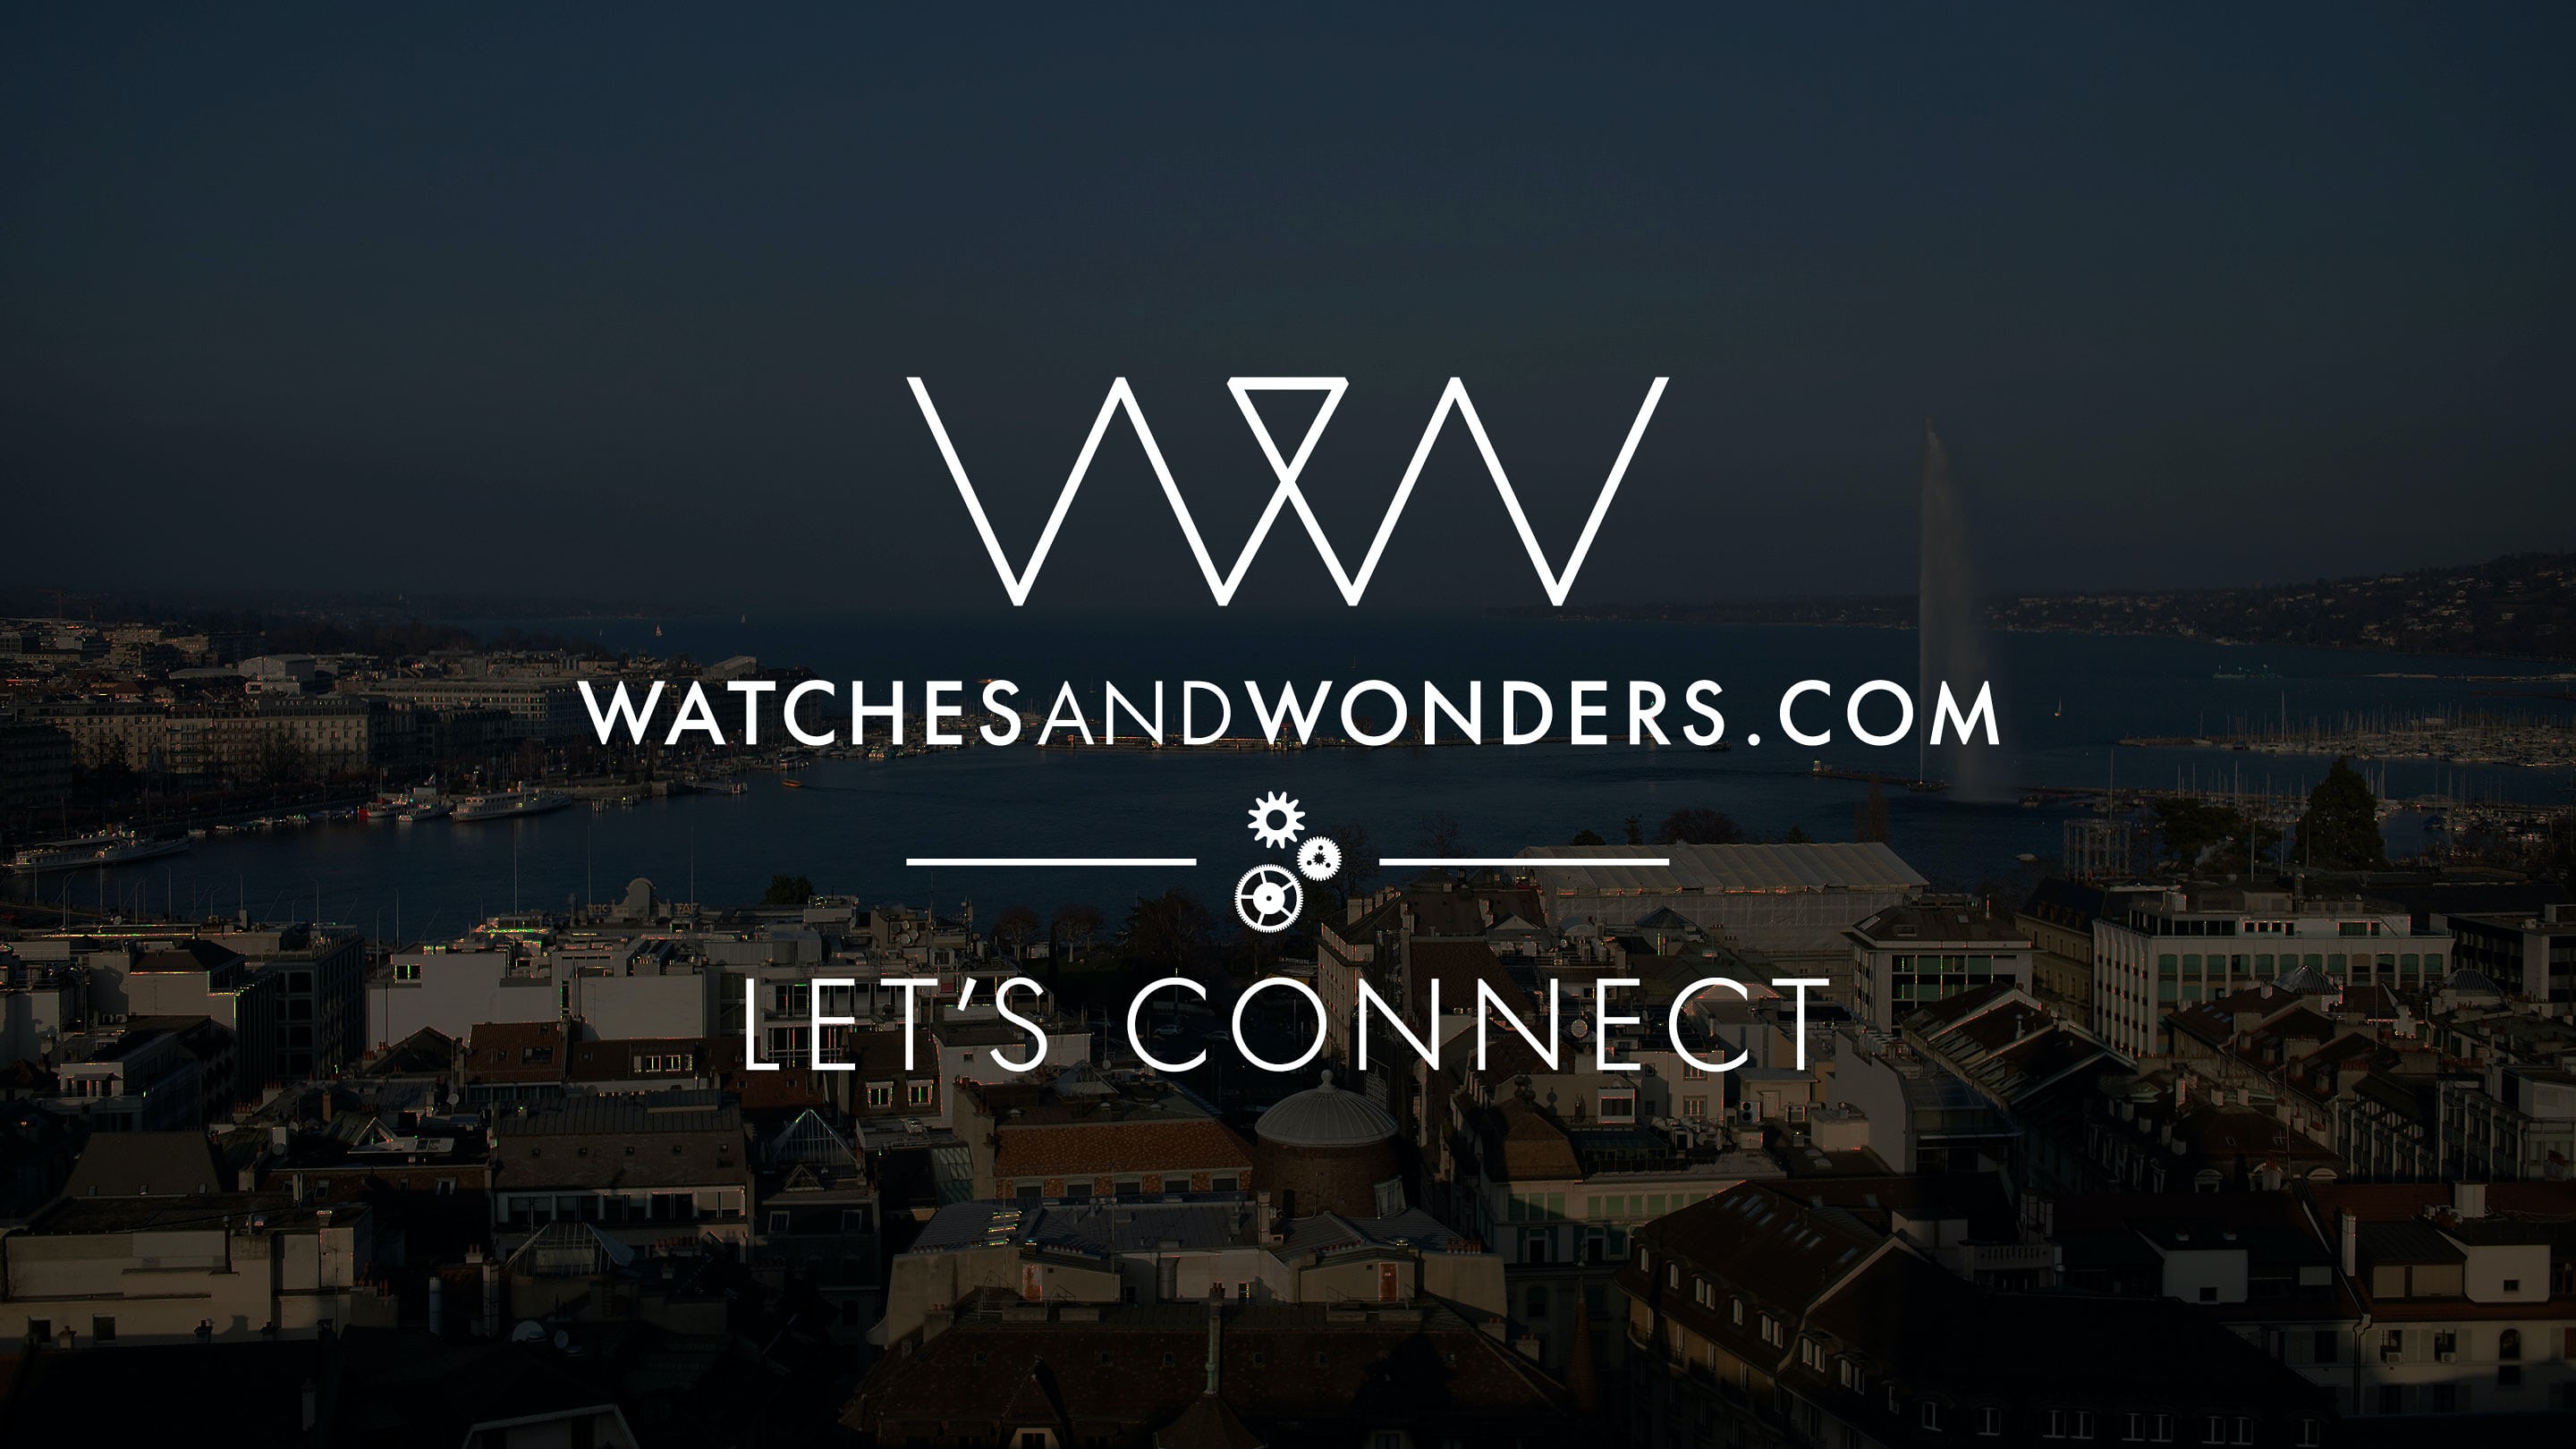 Sự kiện Watches & Wonders 2020 sẽ được diễn ra trực tuyến từ ngày 25/4